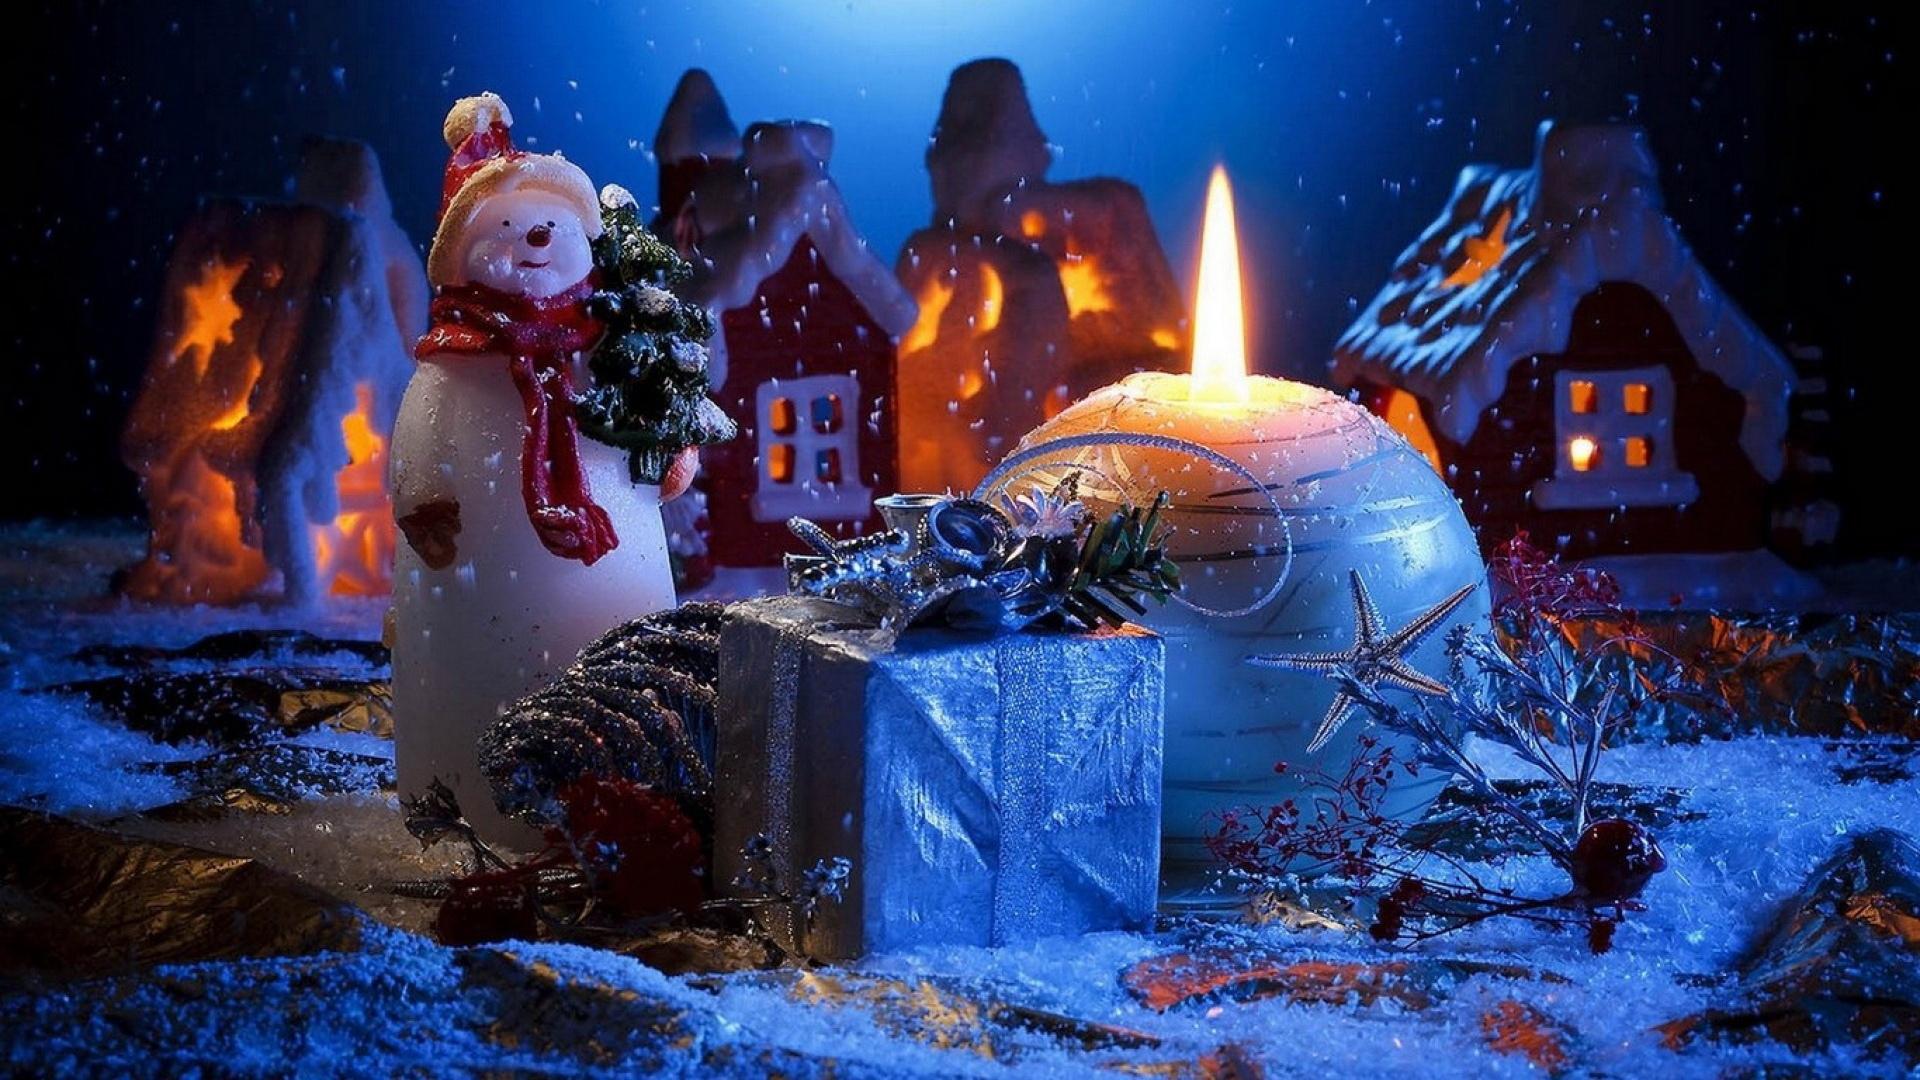 Картинки Зима, новый год, снежинки, арт - обои 1280x1024, картинка №80904